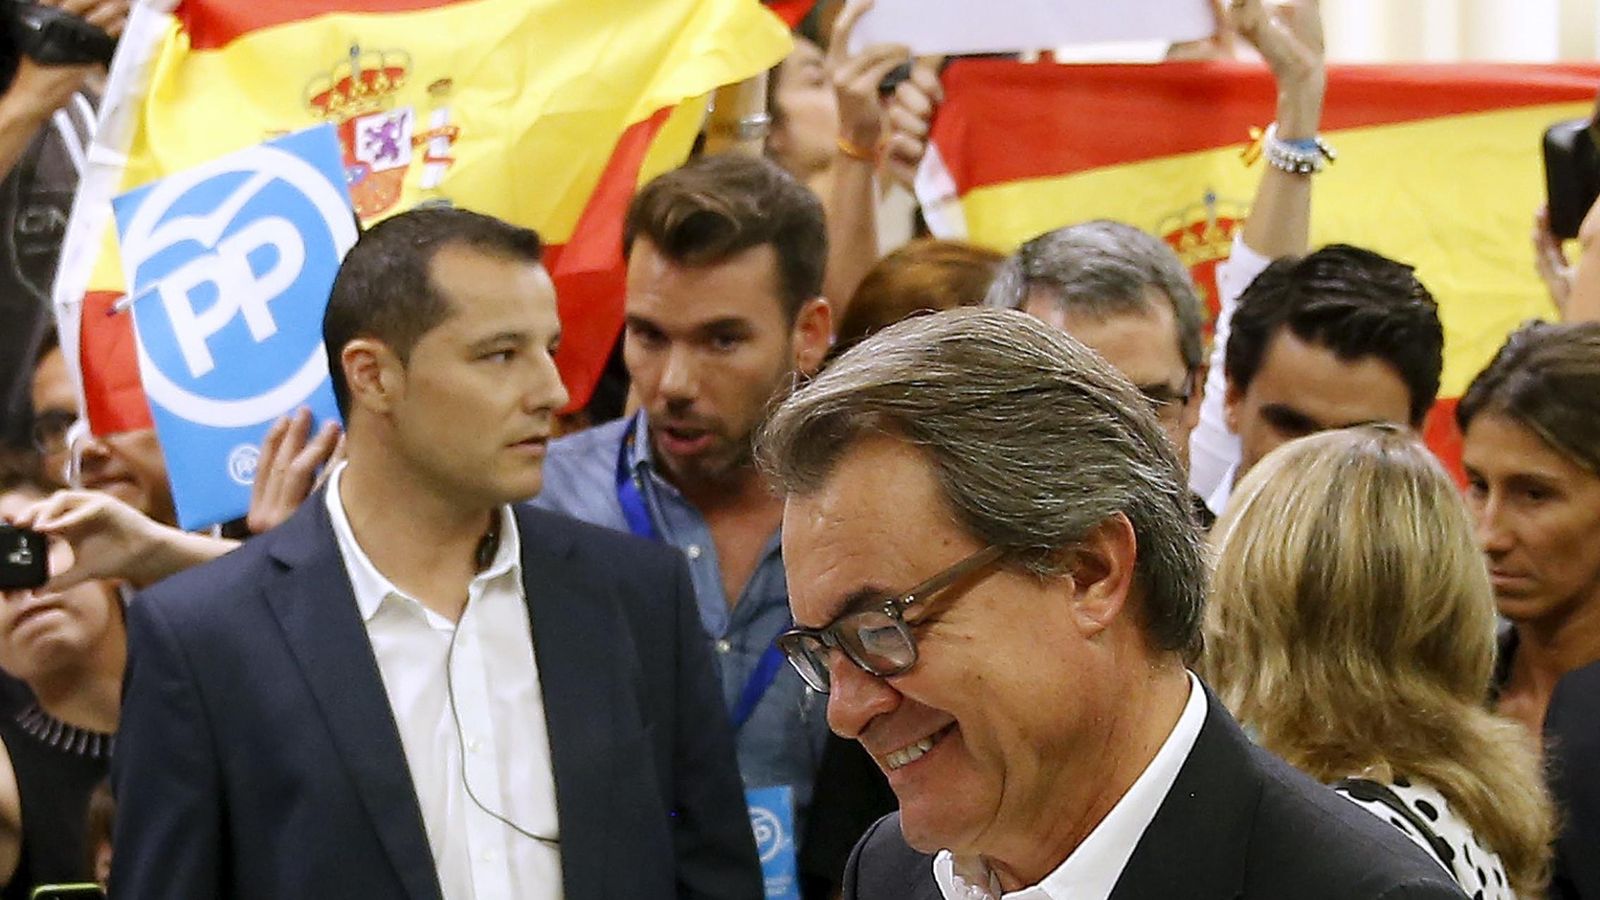 Foto: Artur Mas votando el 27-S junto a unos manifestantes en contra de la independencia. (EFE)